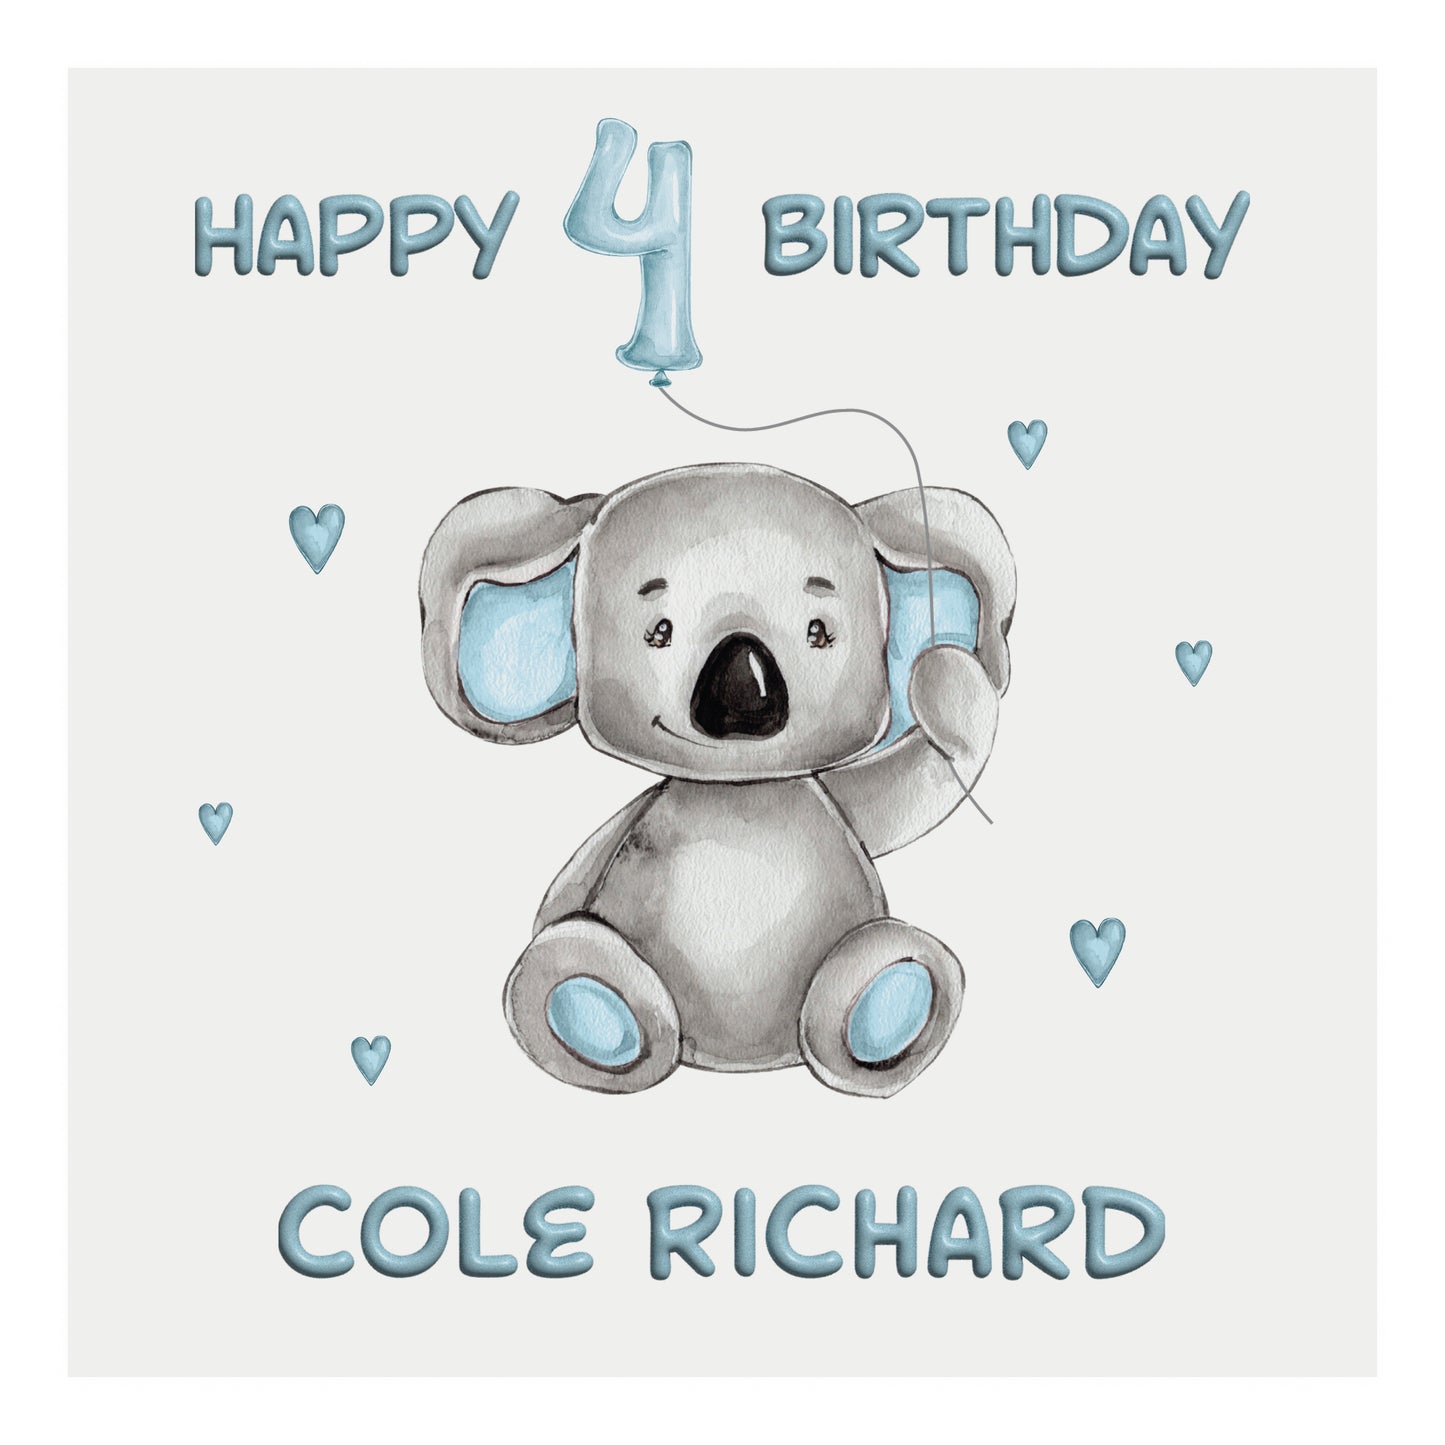 Personalised Birthday Card Balloon Animals (Koala)